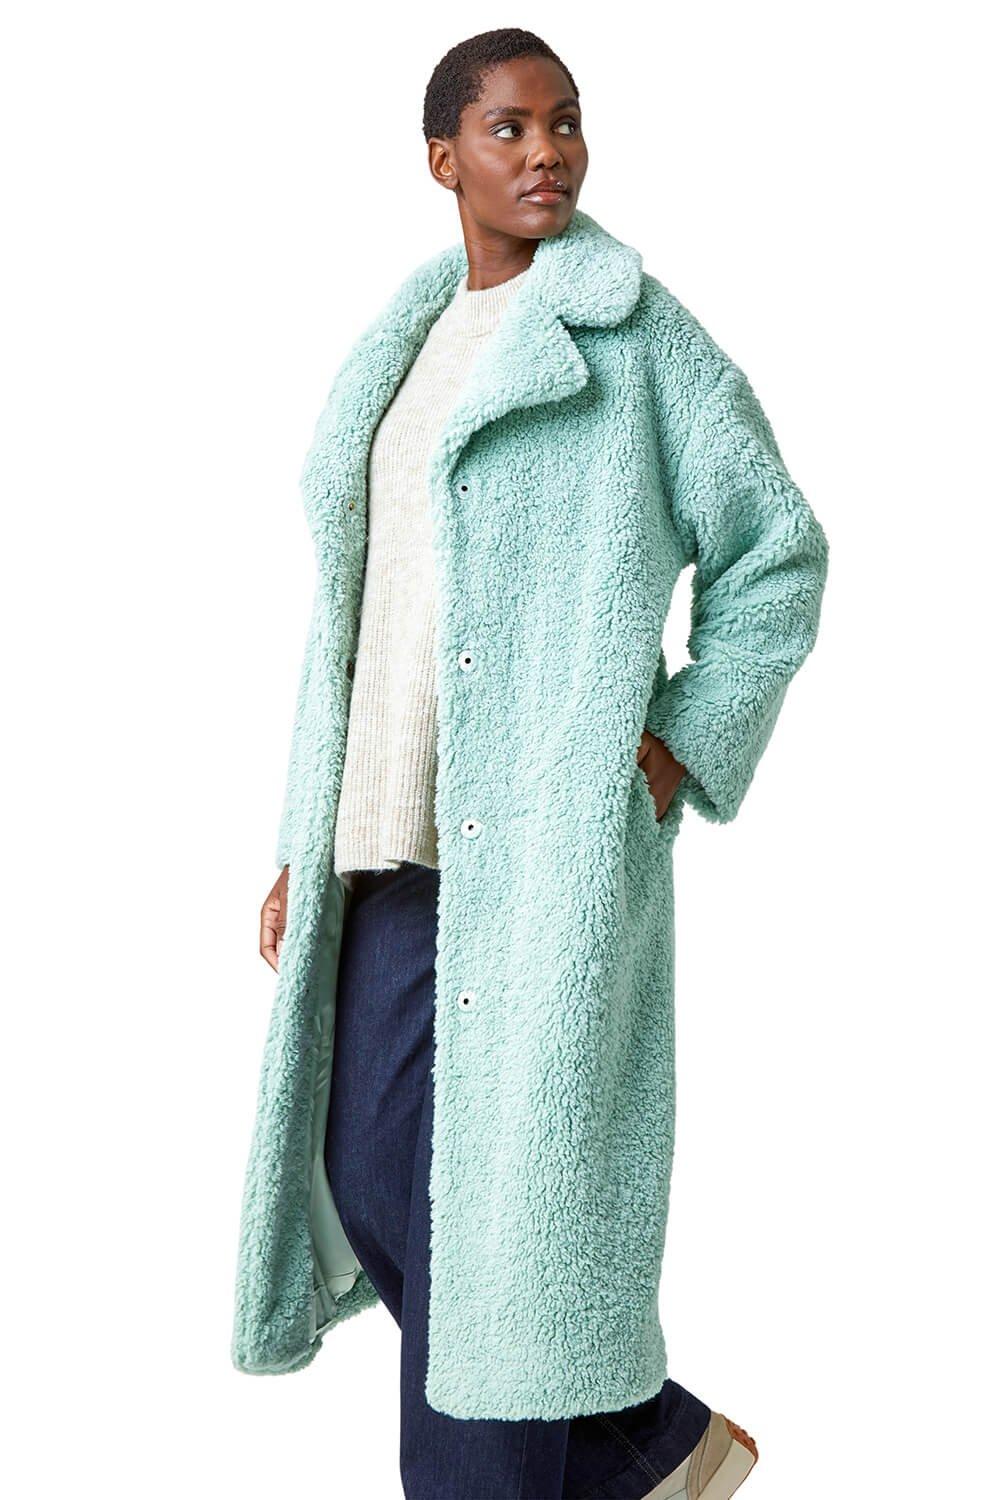 Длинное пальто из искусственного меха Teddy Borg Roman, зеленый женское пальто с меховой подкладкой длинное пальто с воротником из лисьего меха и подкладкой из кроличьего меха уличная зимняя одежда